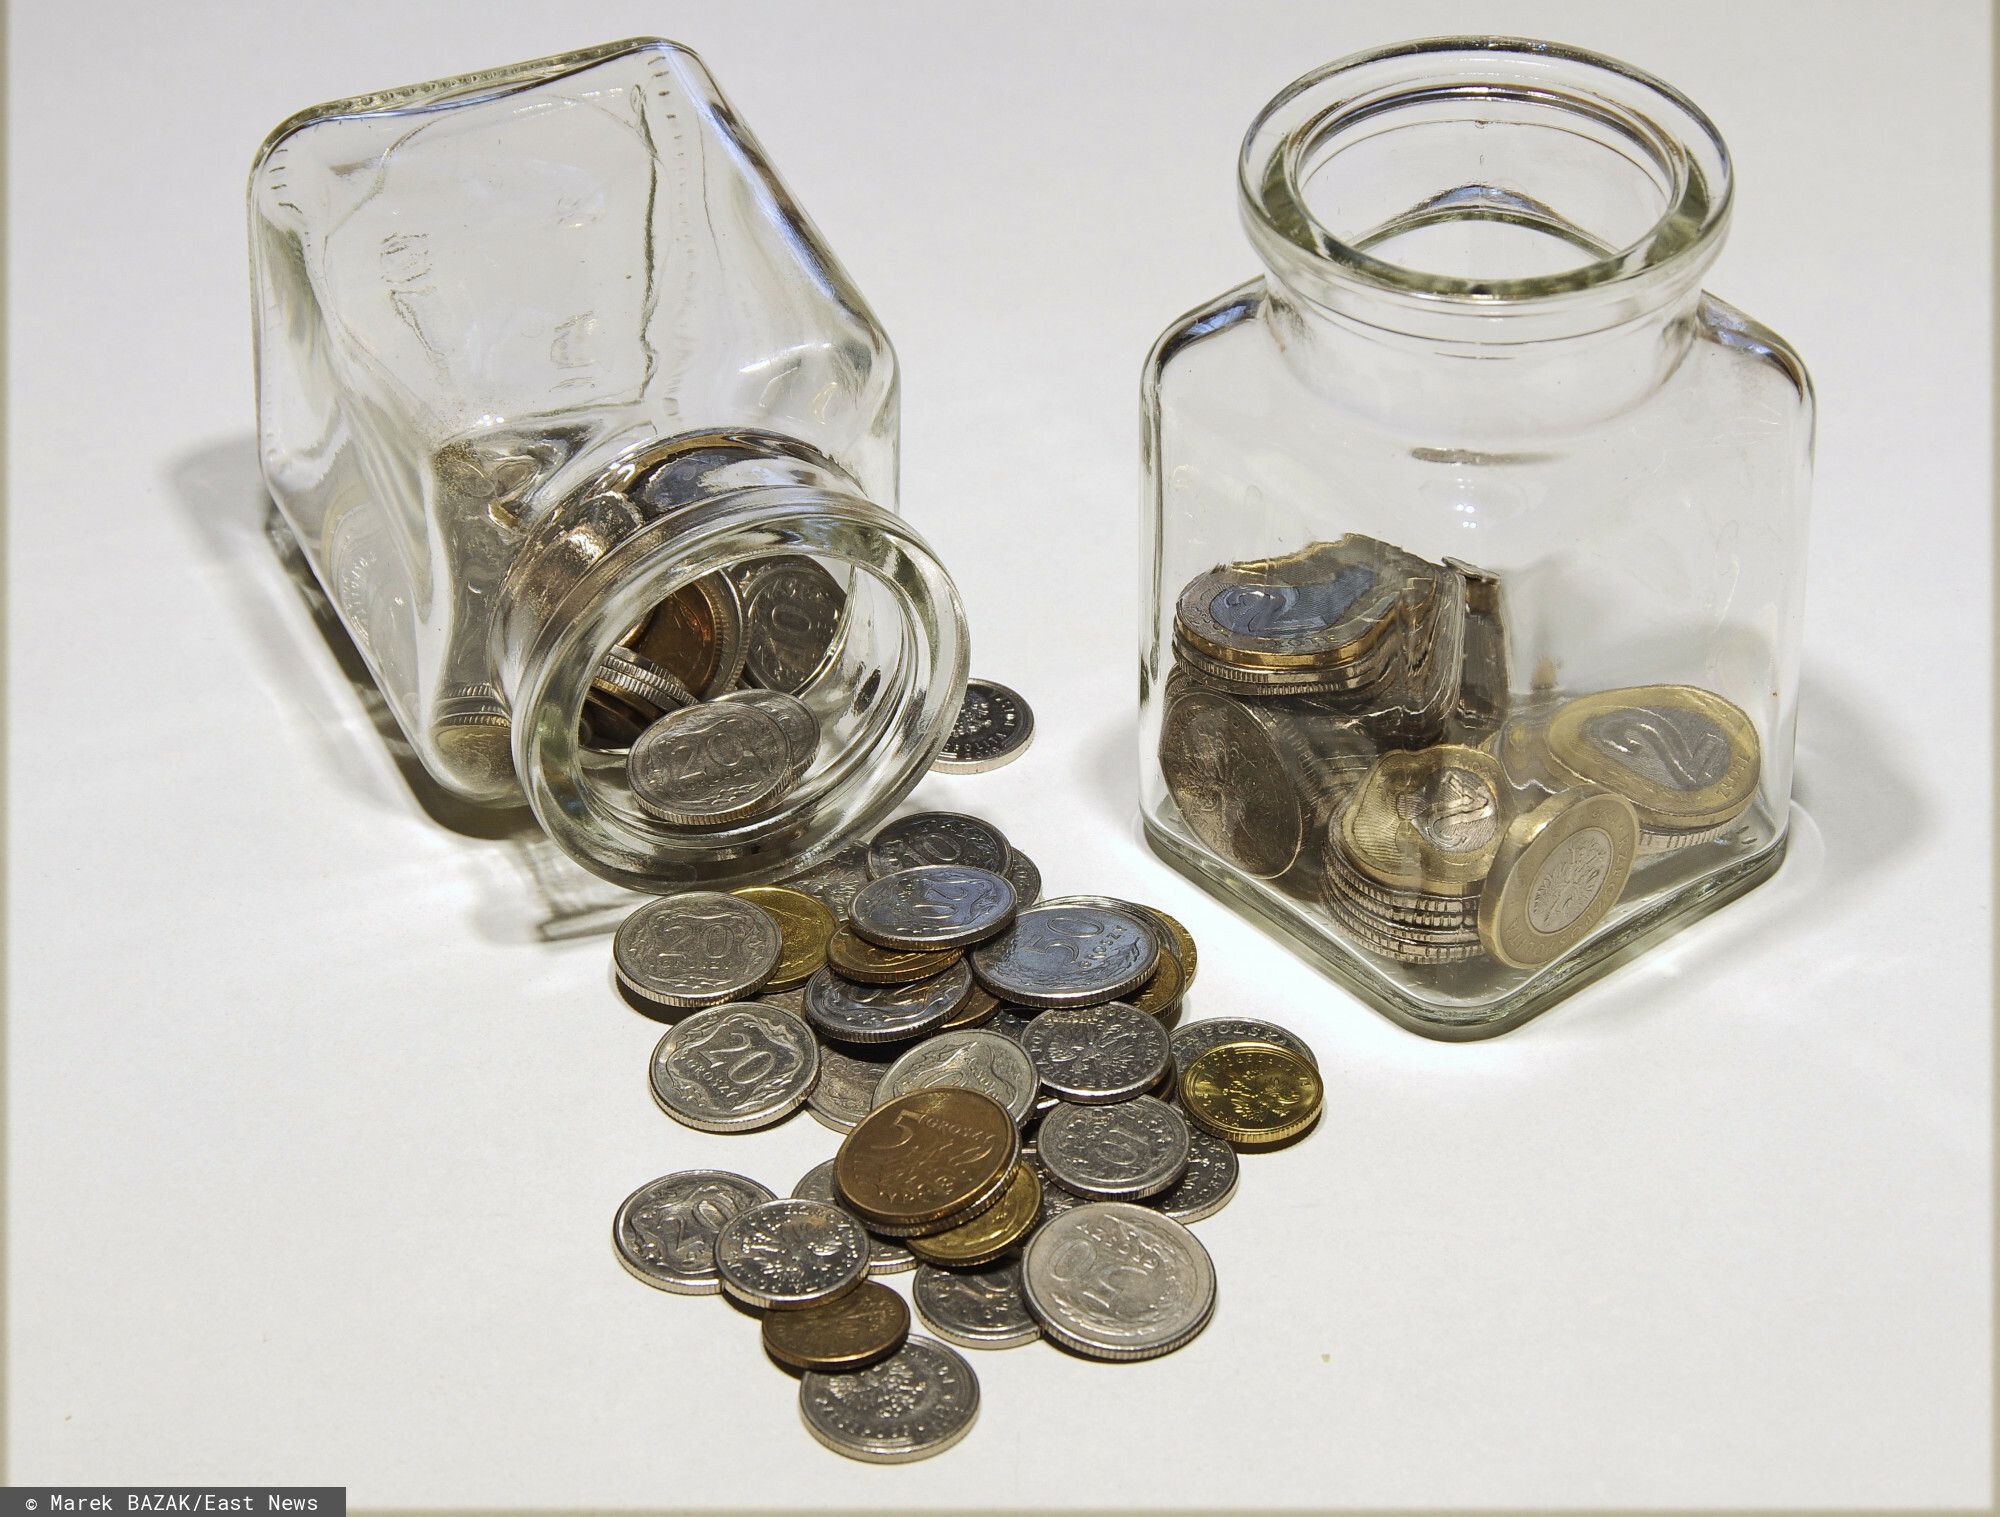 PHOTO: ZOFIA I MAREK BAZAK / EAST NEWS N/Z Drobne monety w szklanych pojemniczkach